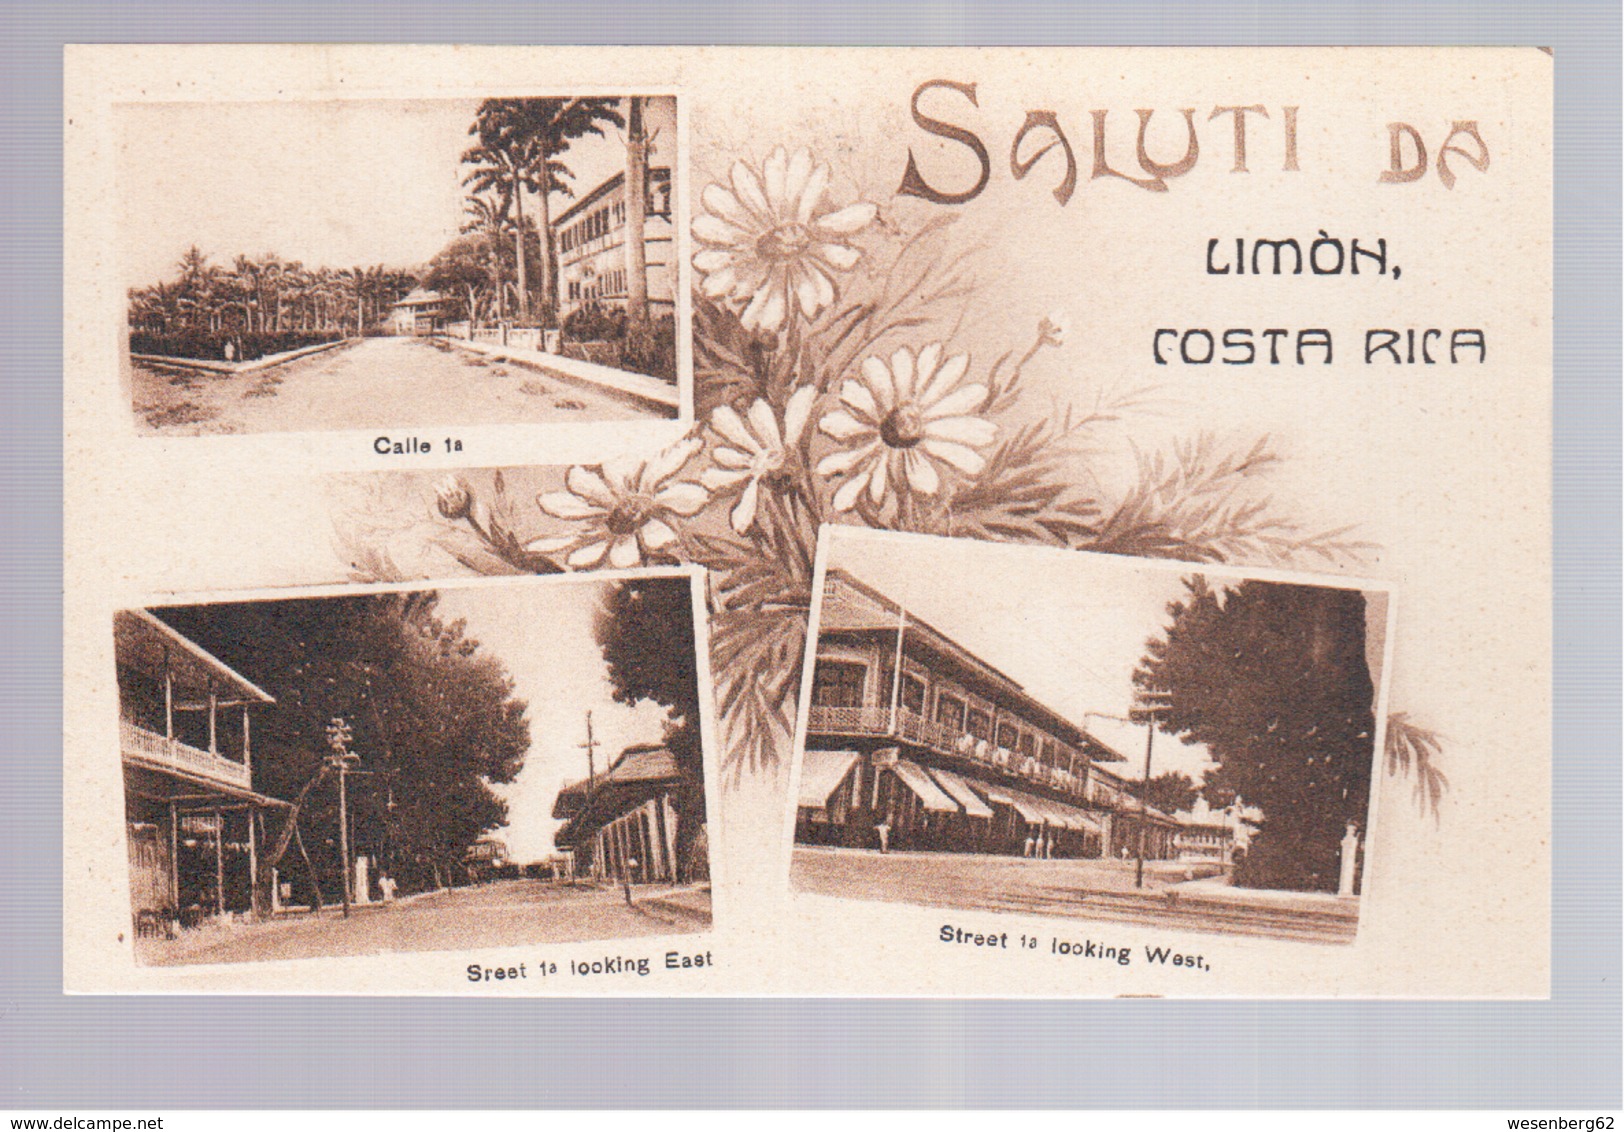 Costa Rica  Saluti Da Limon  Calle 1a, Street 1 Ca 1920 Old Postcard - Costa Rica